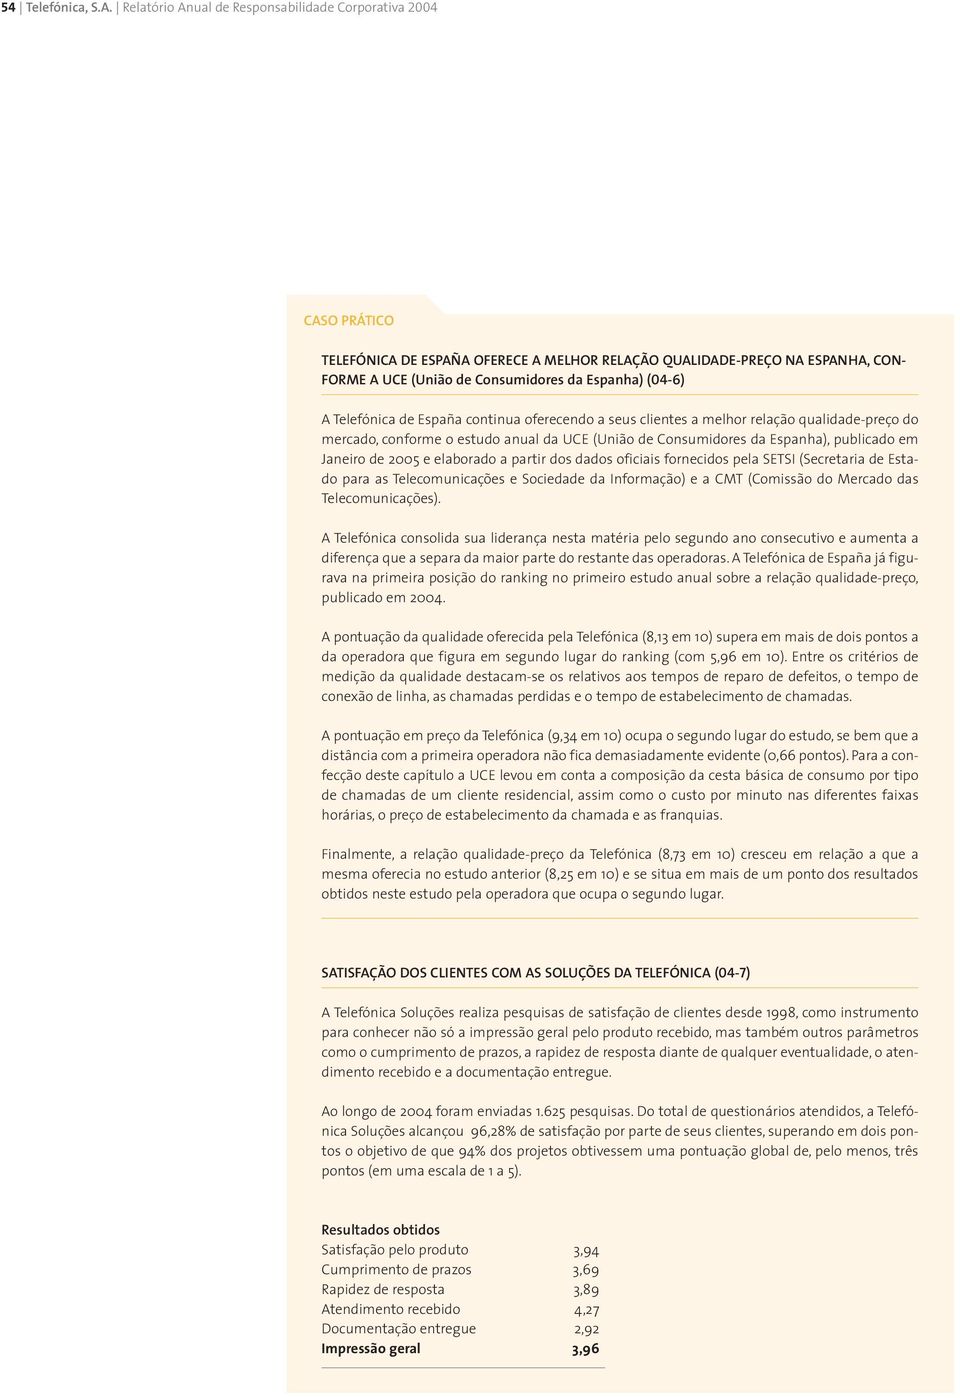 A Telefónica de España continua oferecendo a seus clientes a melhor relação qualidade-preço do mercado, conforme o estudo anual da UCE (União de Consumidores da Espanha), publicado em Janeiro de 2005